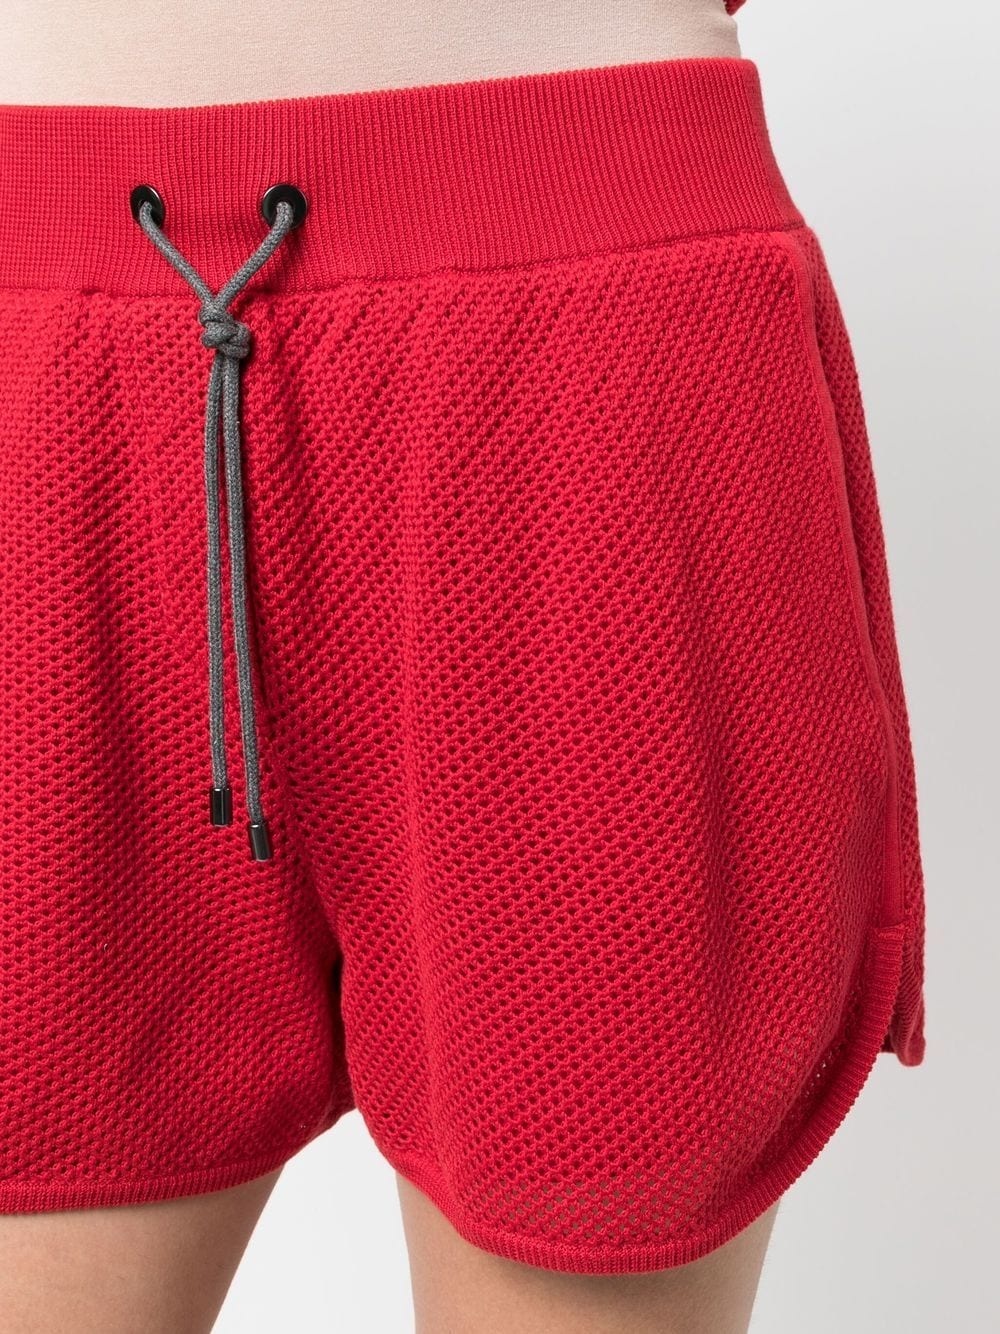 drawstring knit shorts - 5